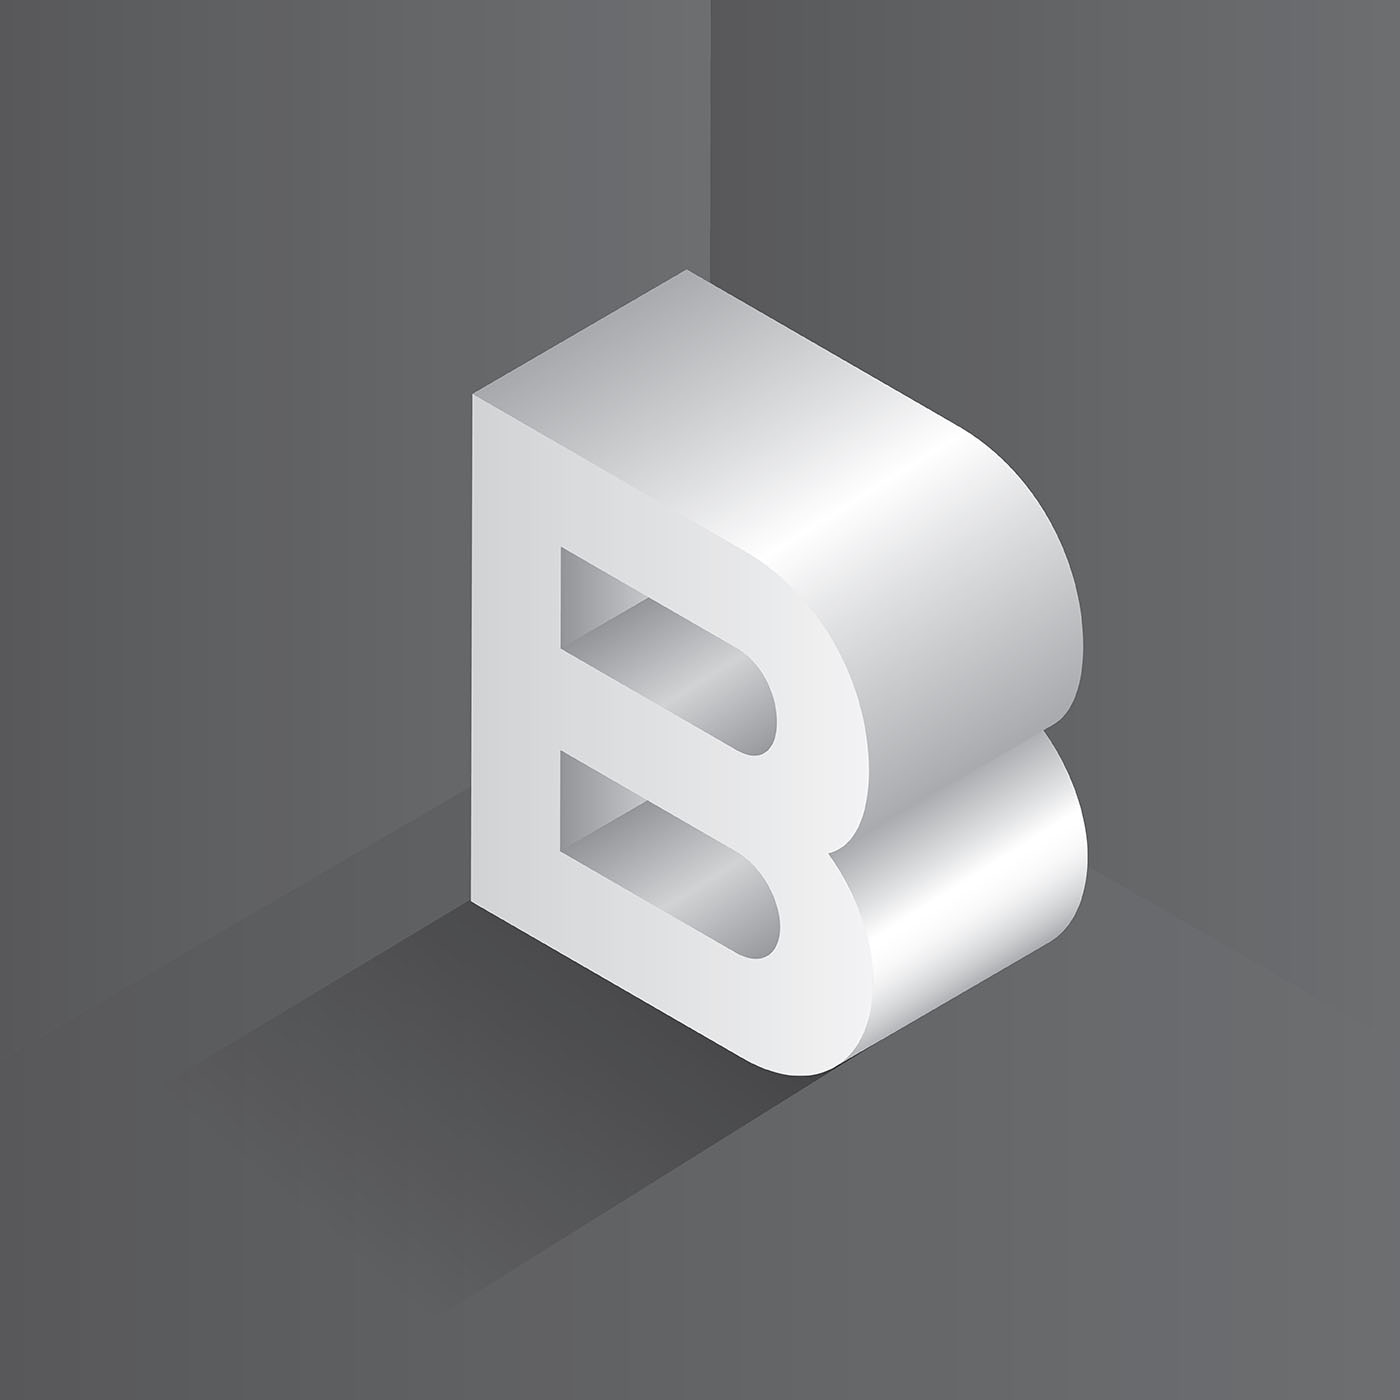 Download 6 B Logo - Koleksi Wafis